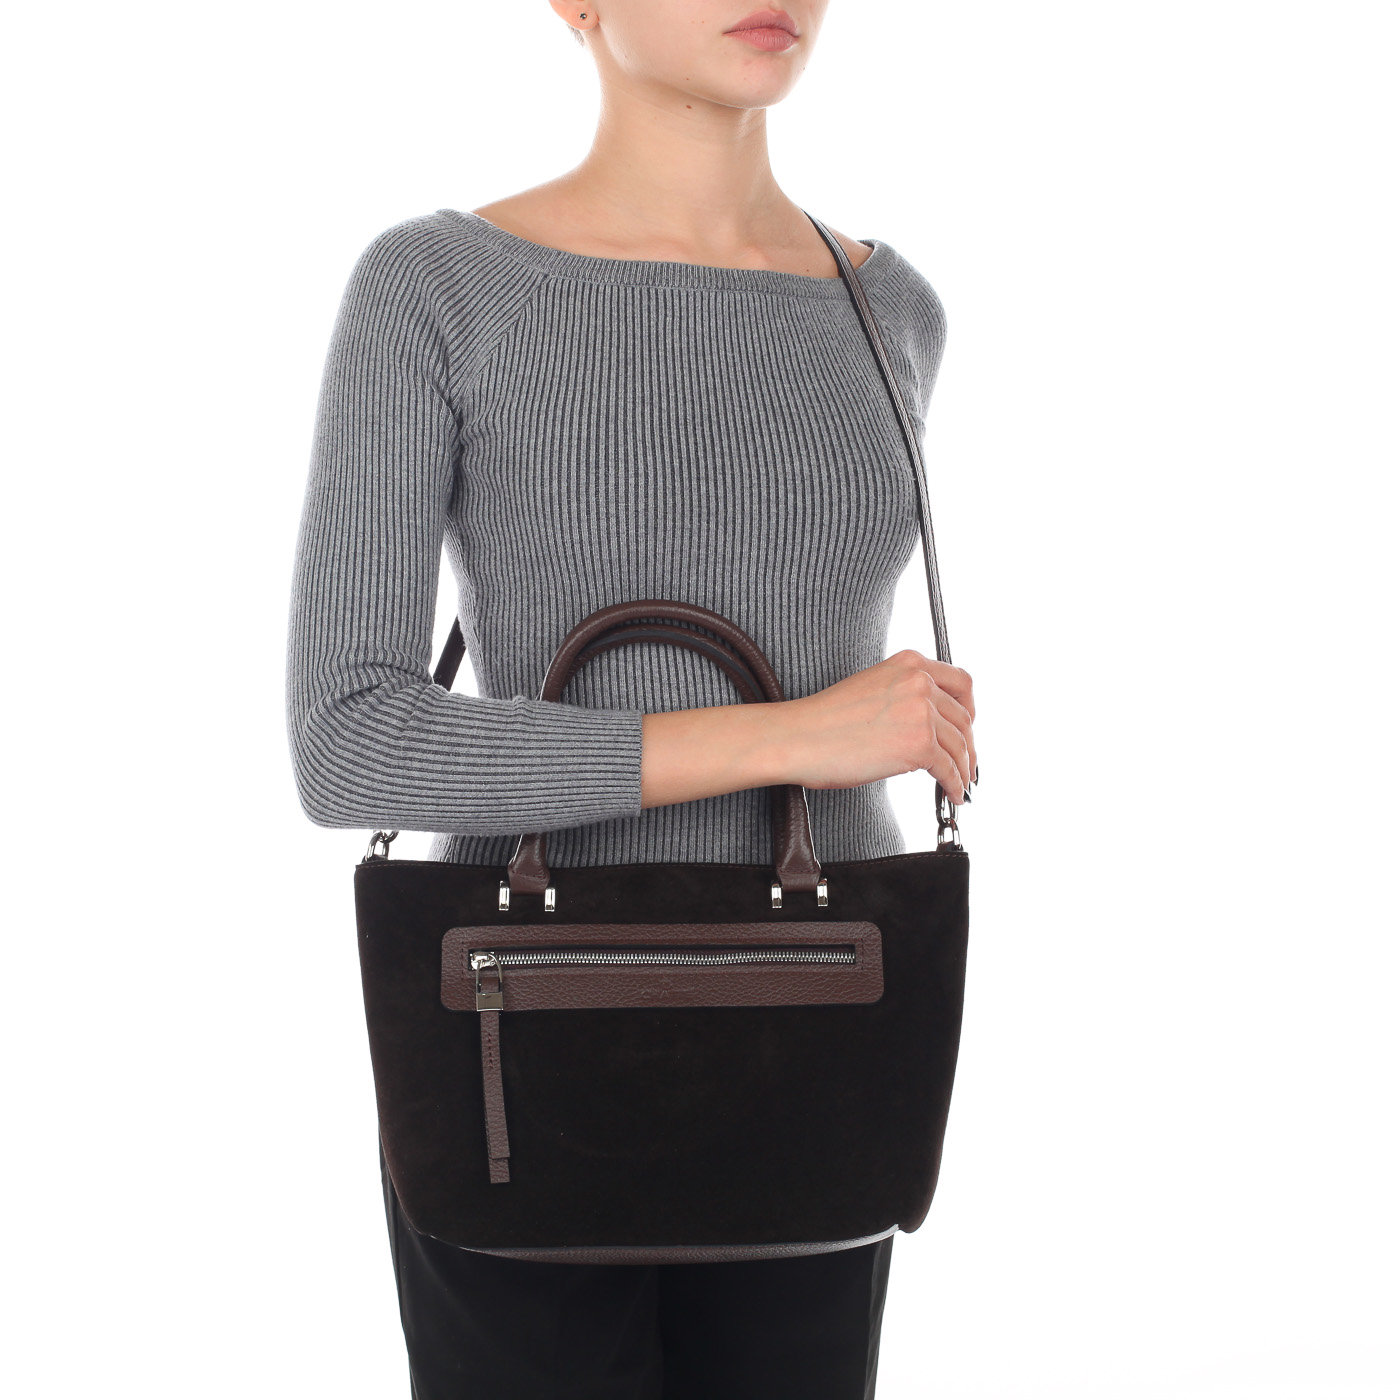 Коричневая женская сумка со съемным плечевым ремешком Chatte 